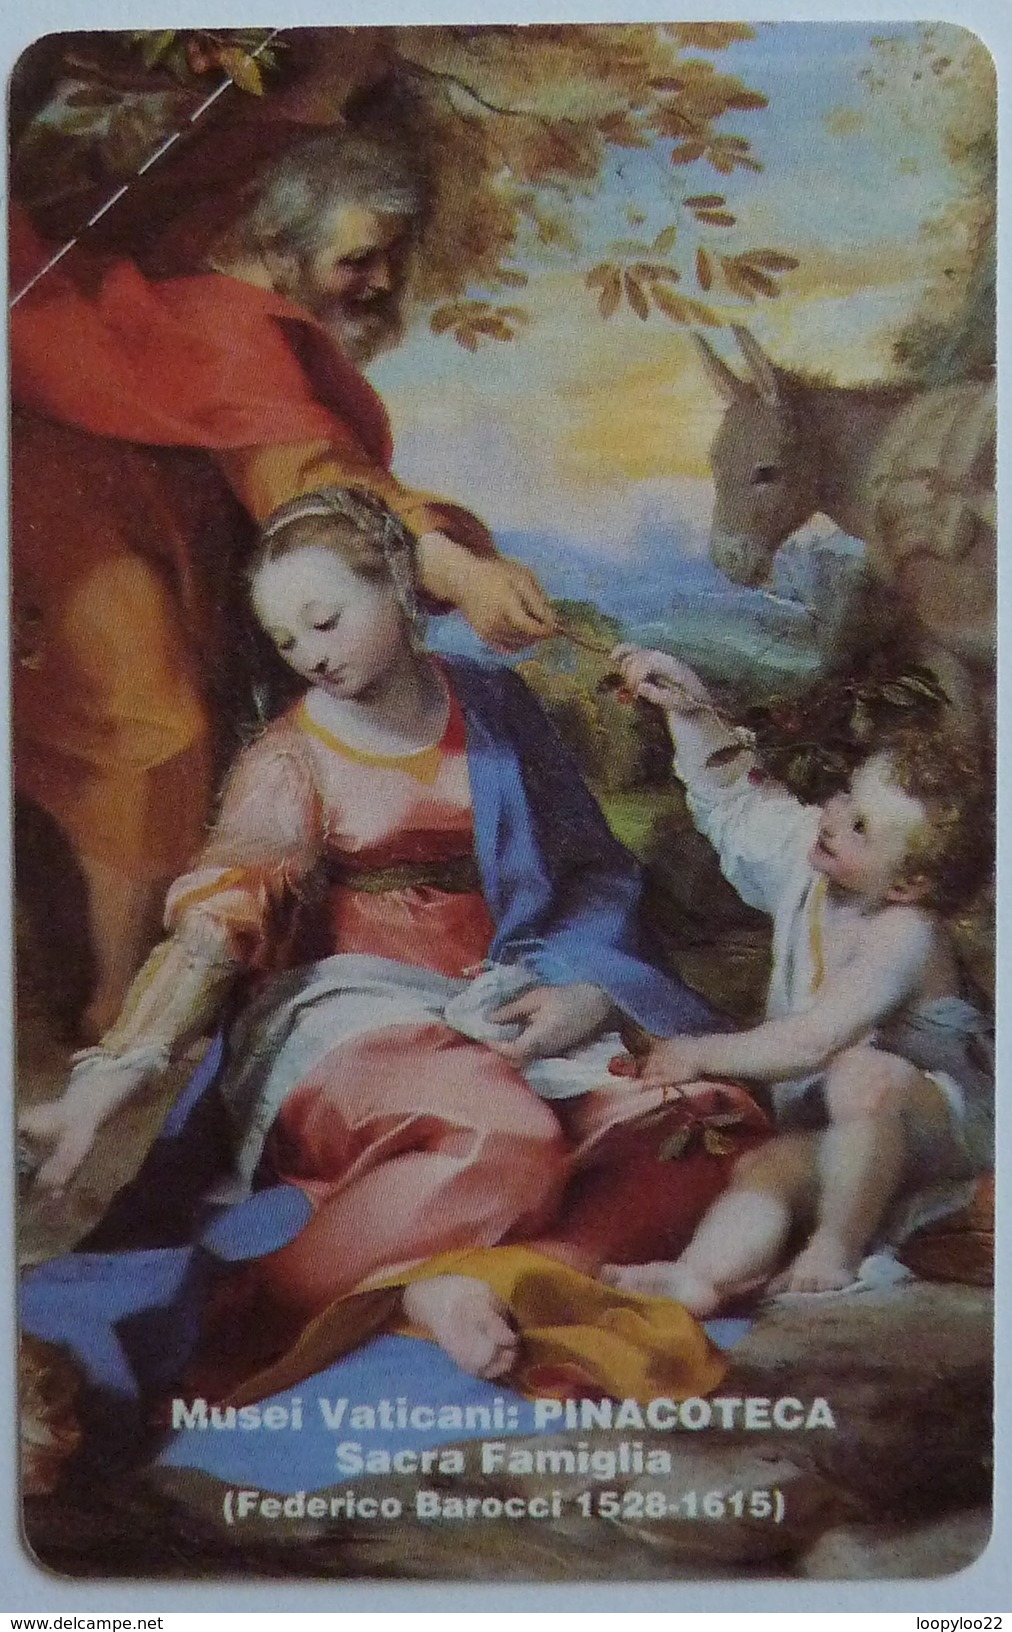 VATICAN - Urmet - SCV 7 - Pinacoteca Sacra Famiglia - 5000 Units - Mint - Vatican